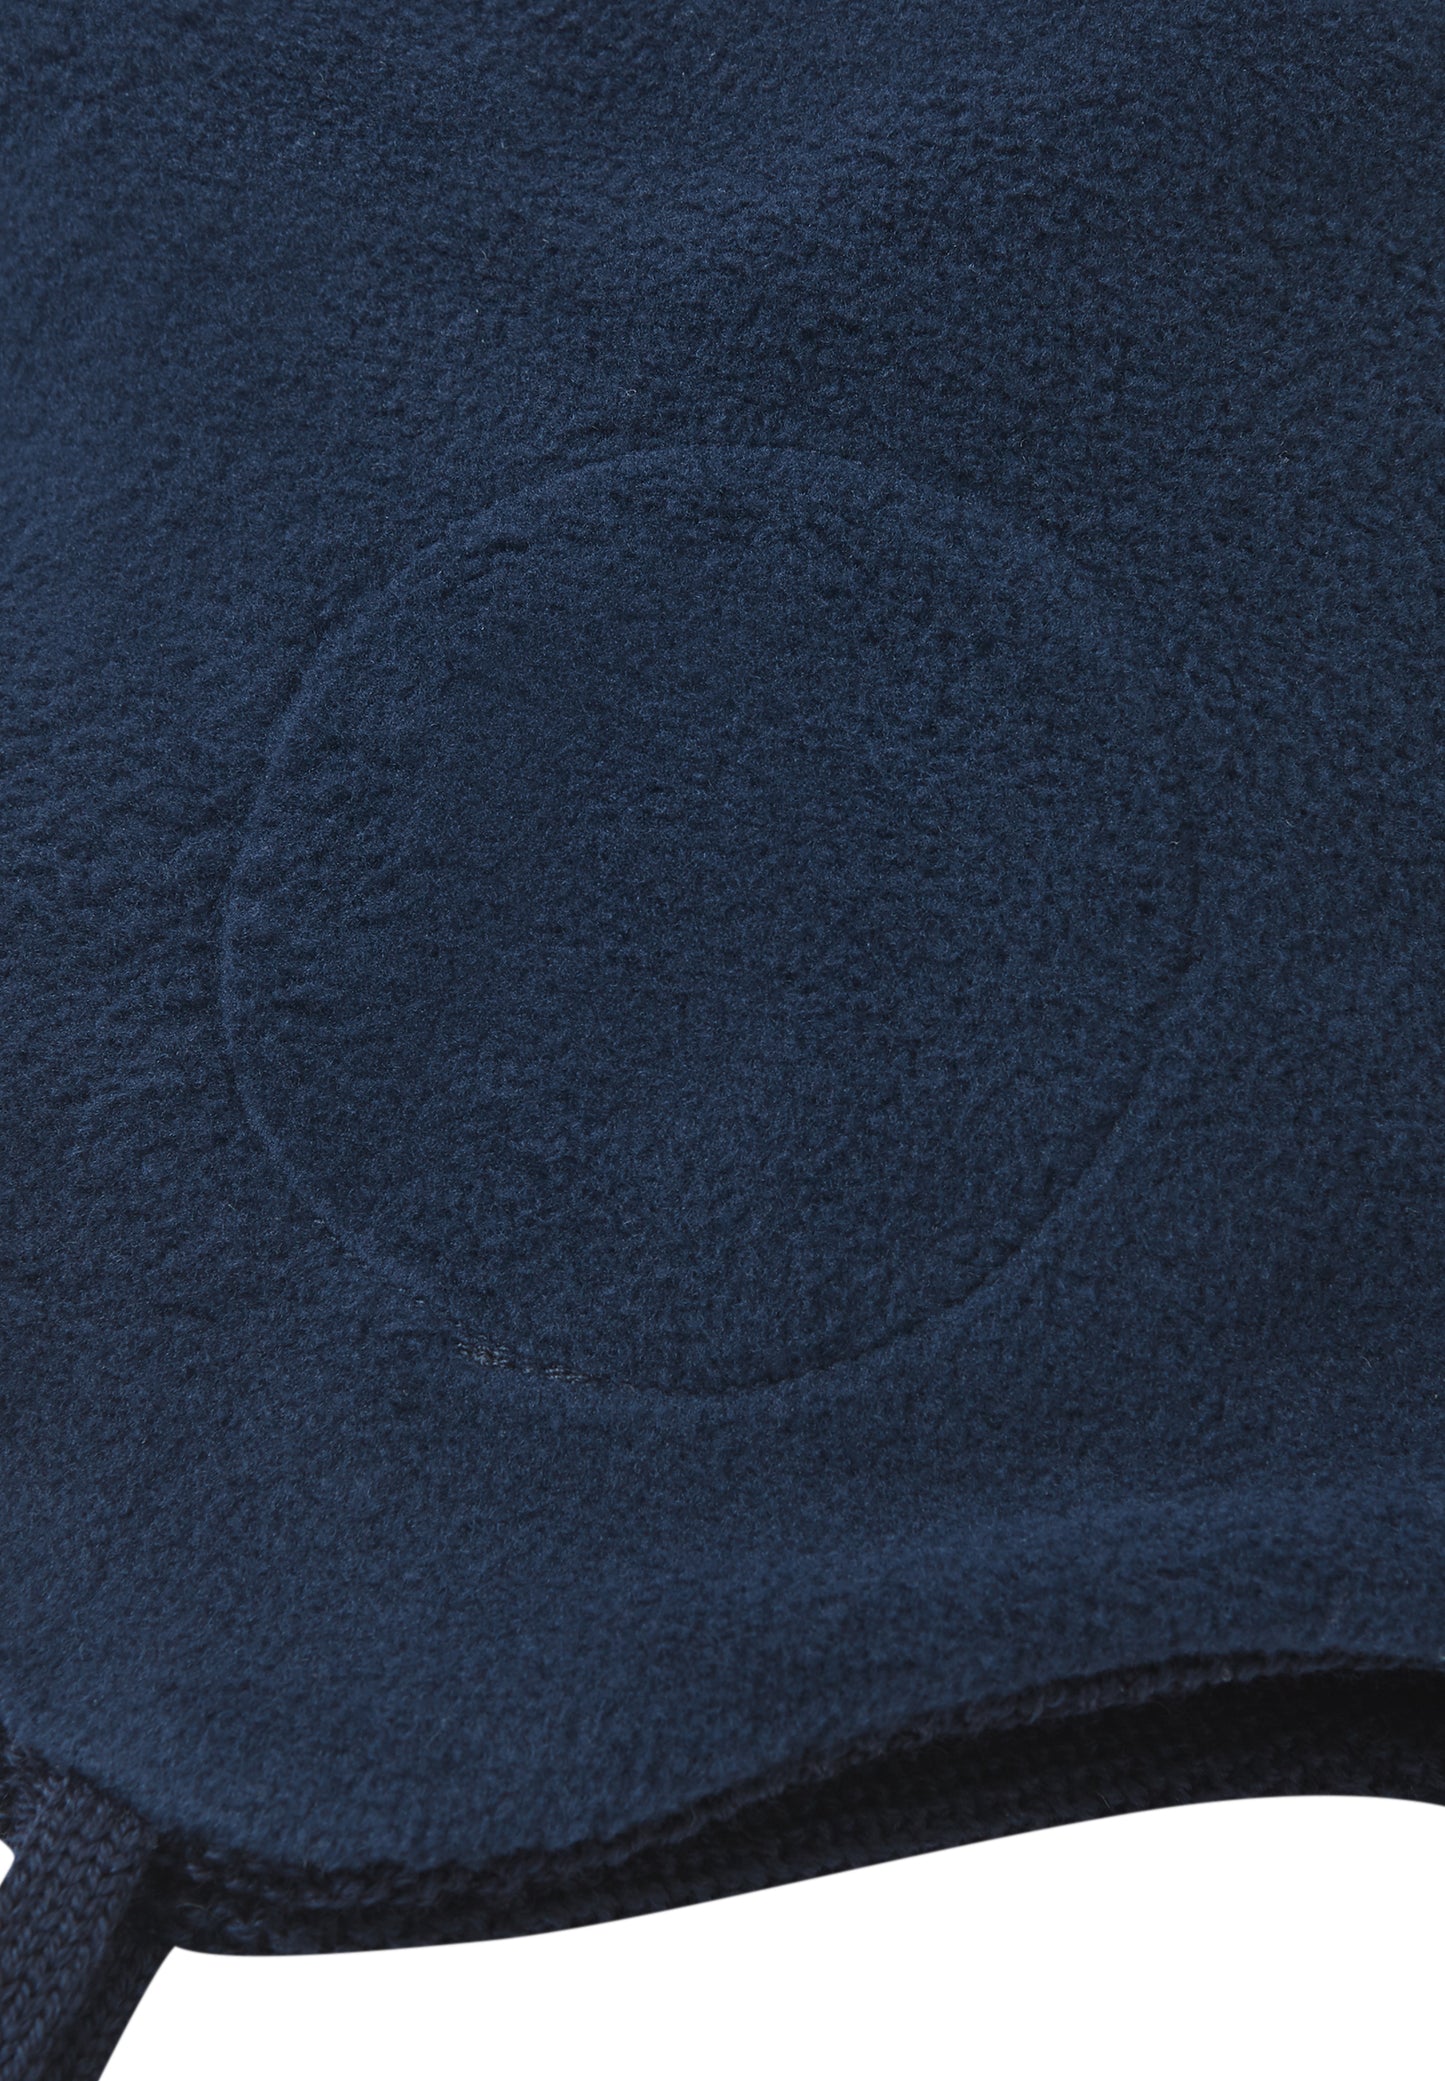 Reima Mütze mit Bändel <br>Piponen <br>Gr. 46 bis 54 <br>innen hautfreundliches Fleece<br> aussen warme, wasserabweisende Merino-Wolle<br>Windstopper-Membrane im Ohrbereich